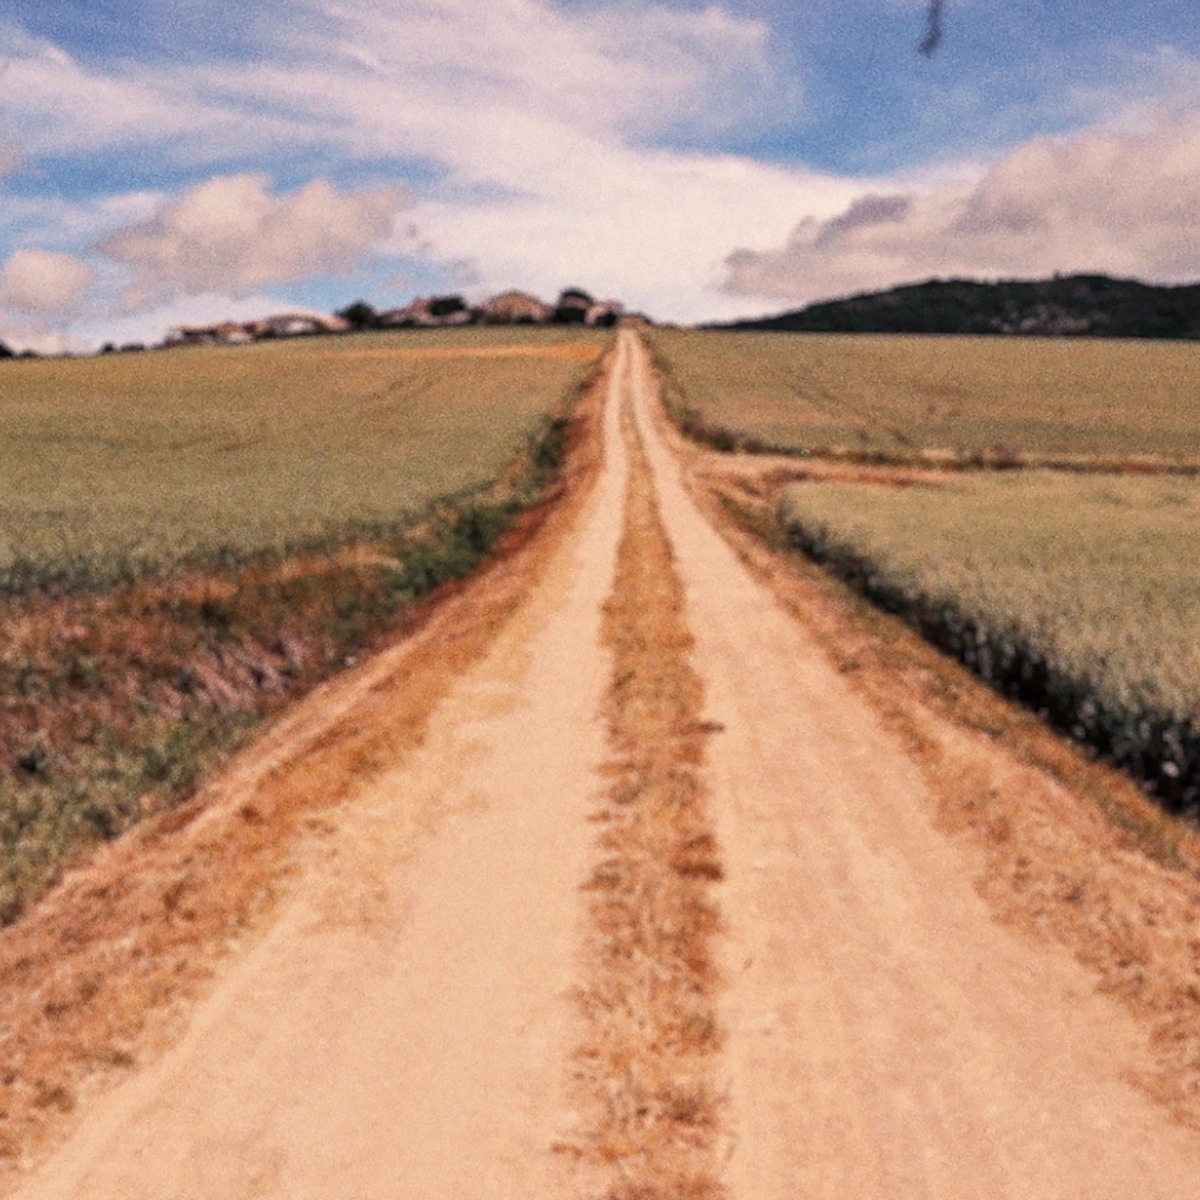 A dirt road through a field.